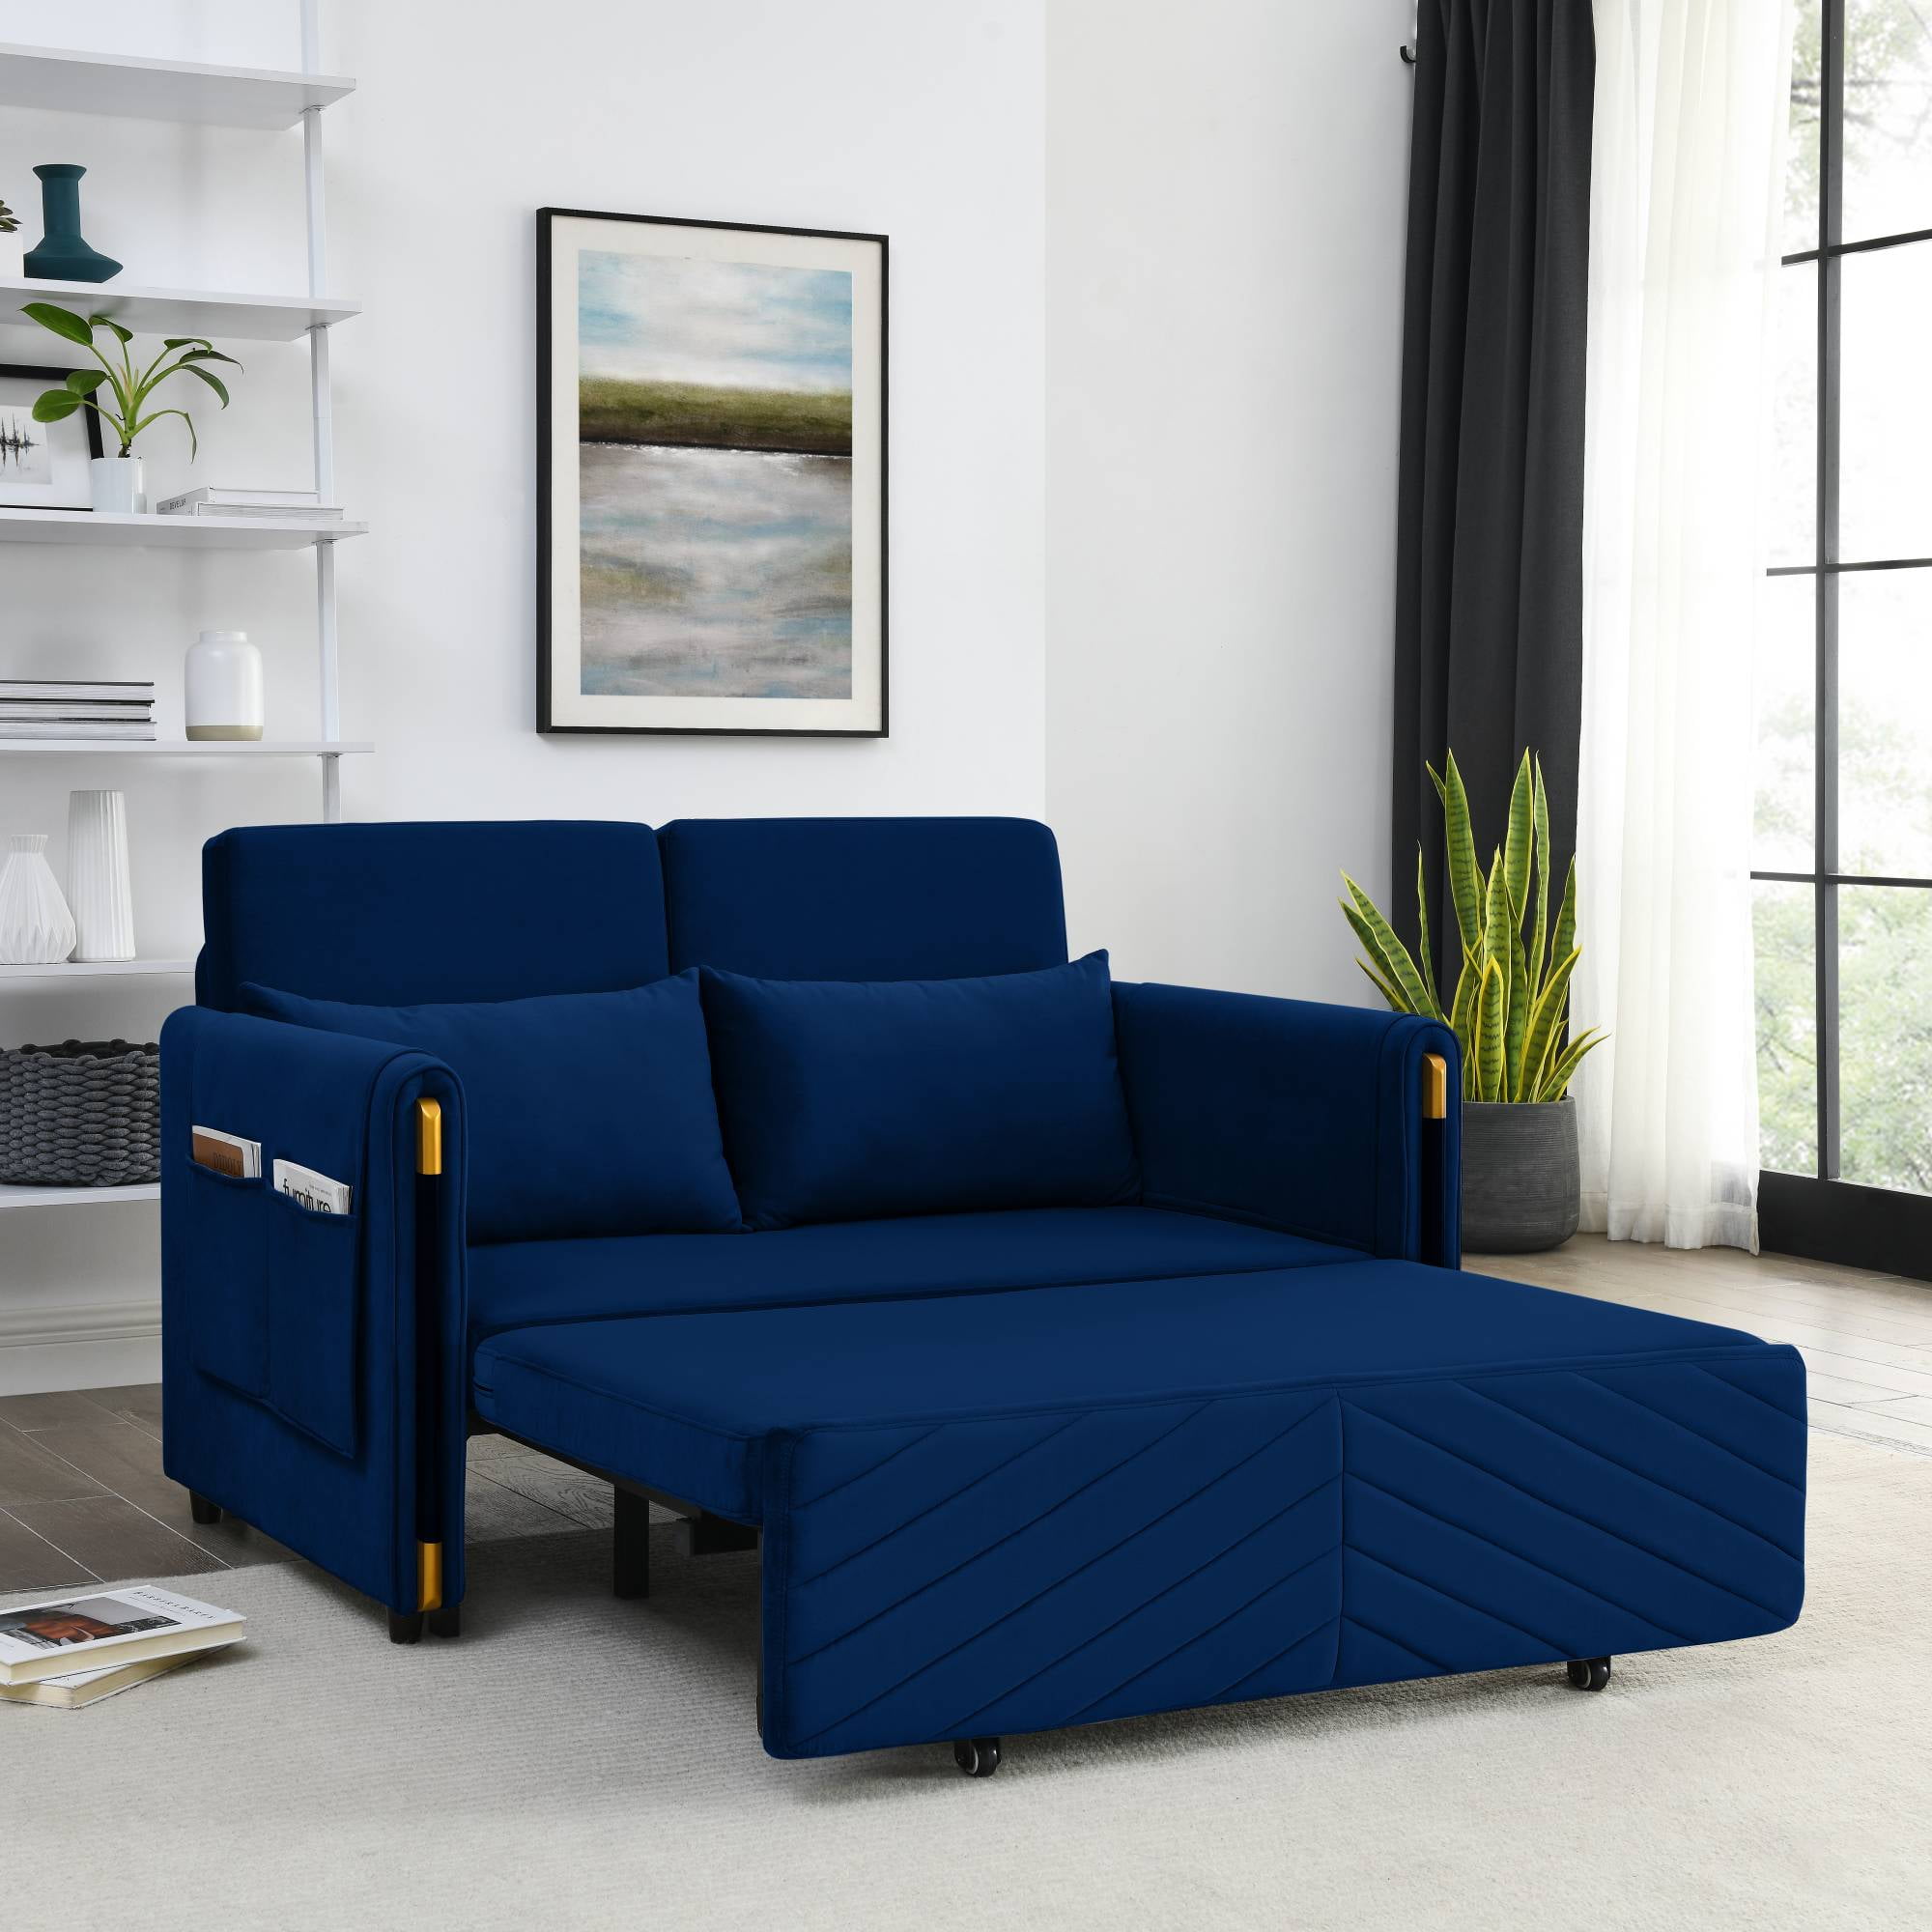 Zechuan Convertible Sofa Bed - 54